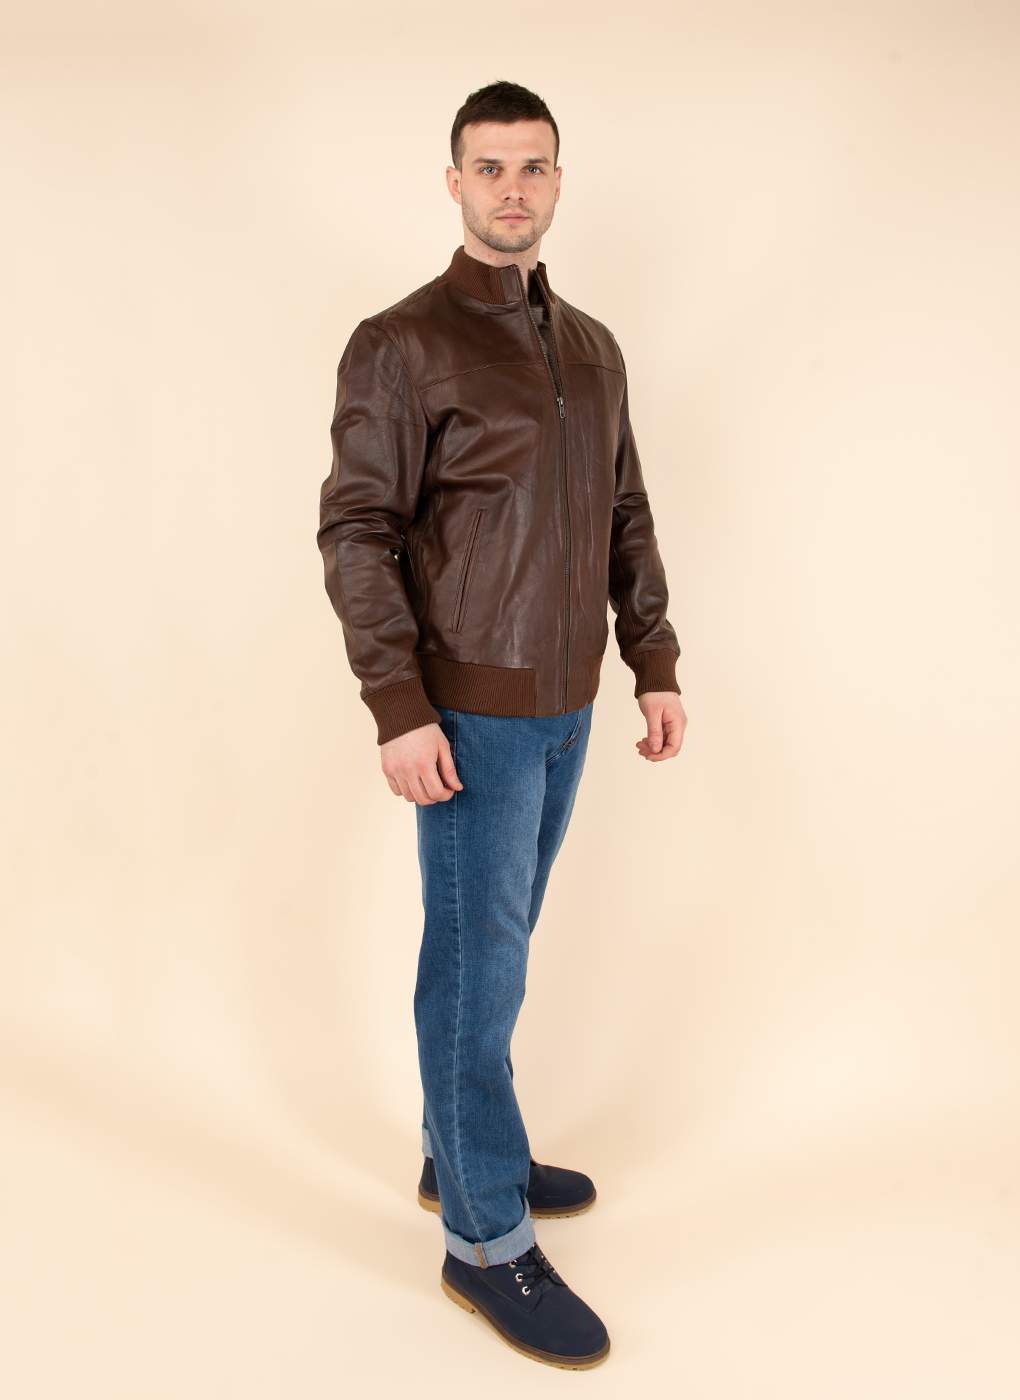 Кожаная куртка мужская Каляев 45226 коричневая 56 RU